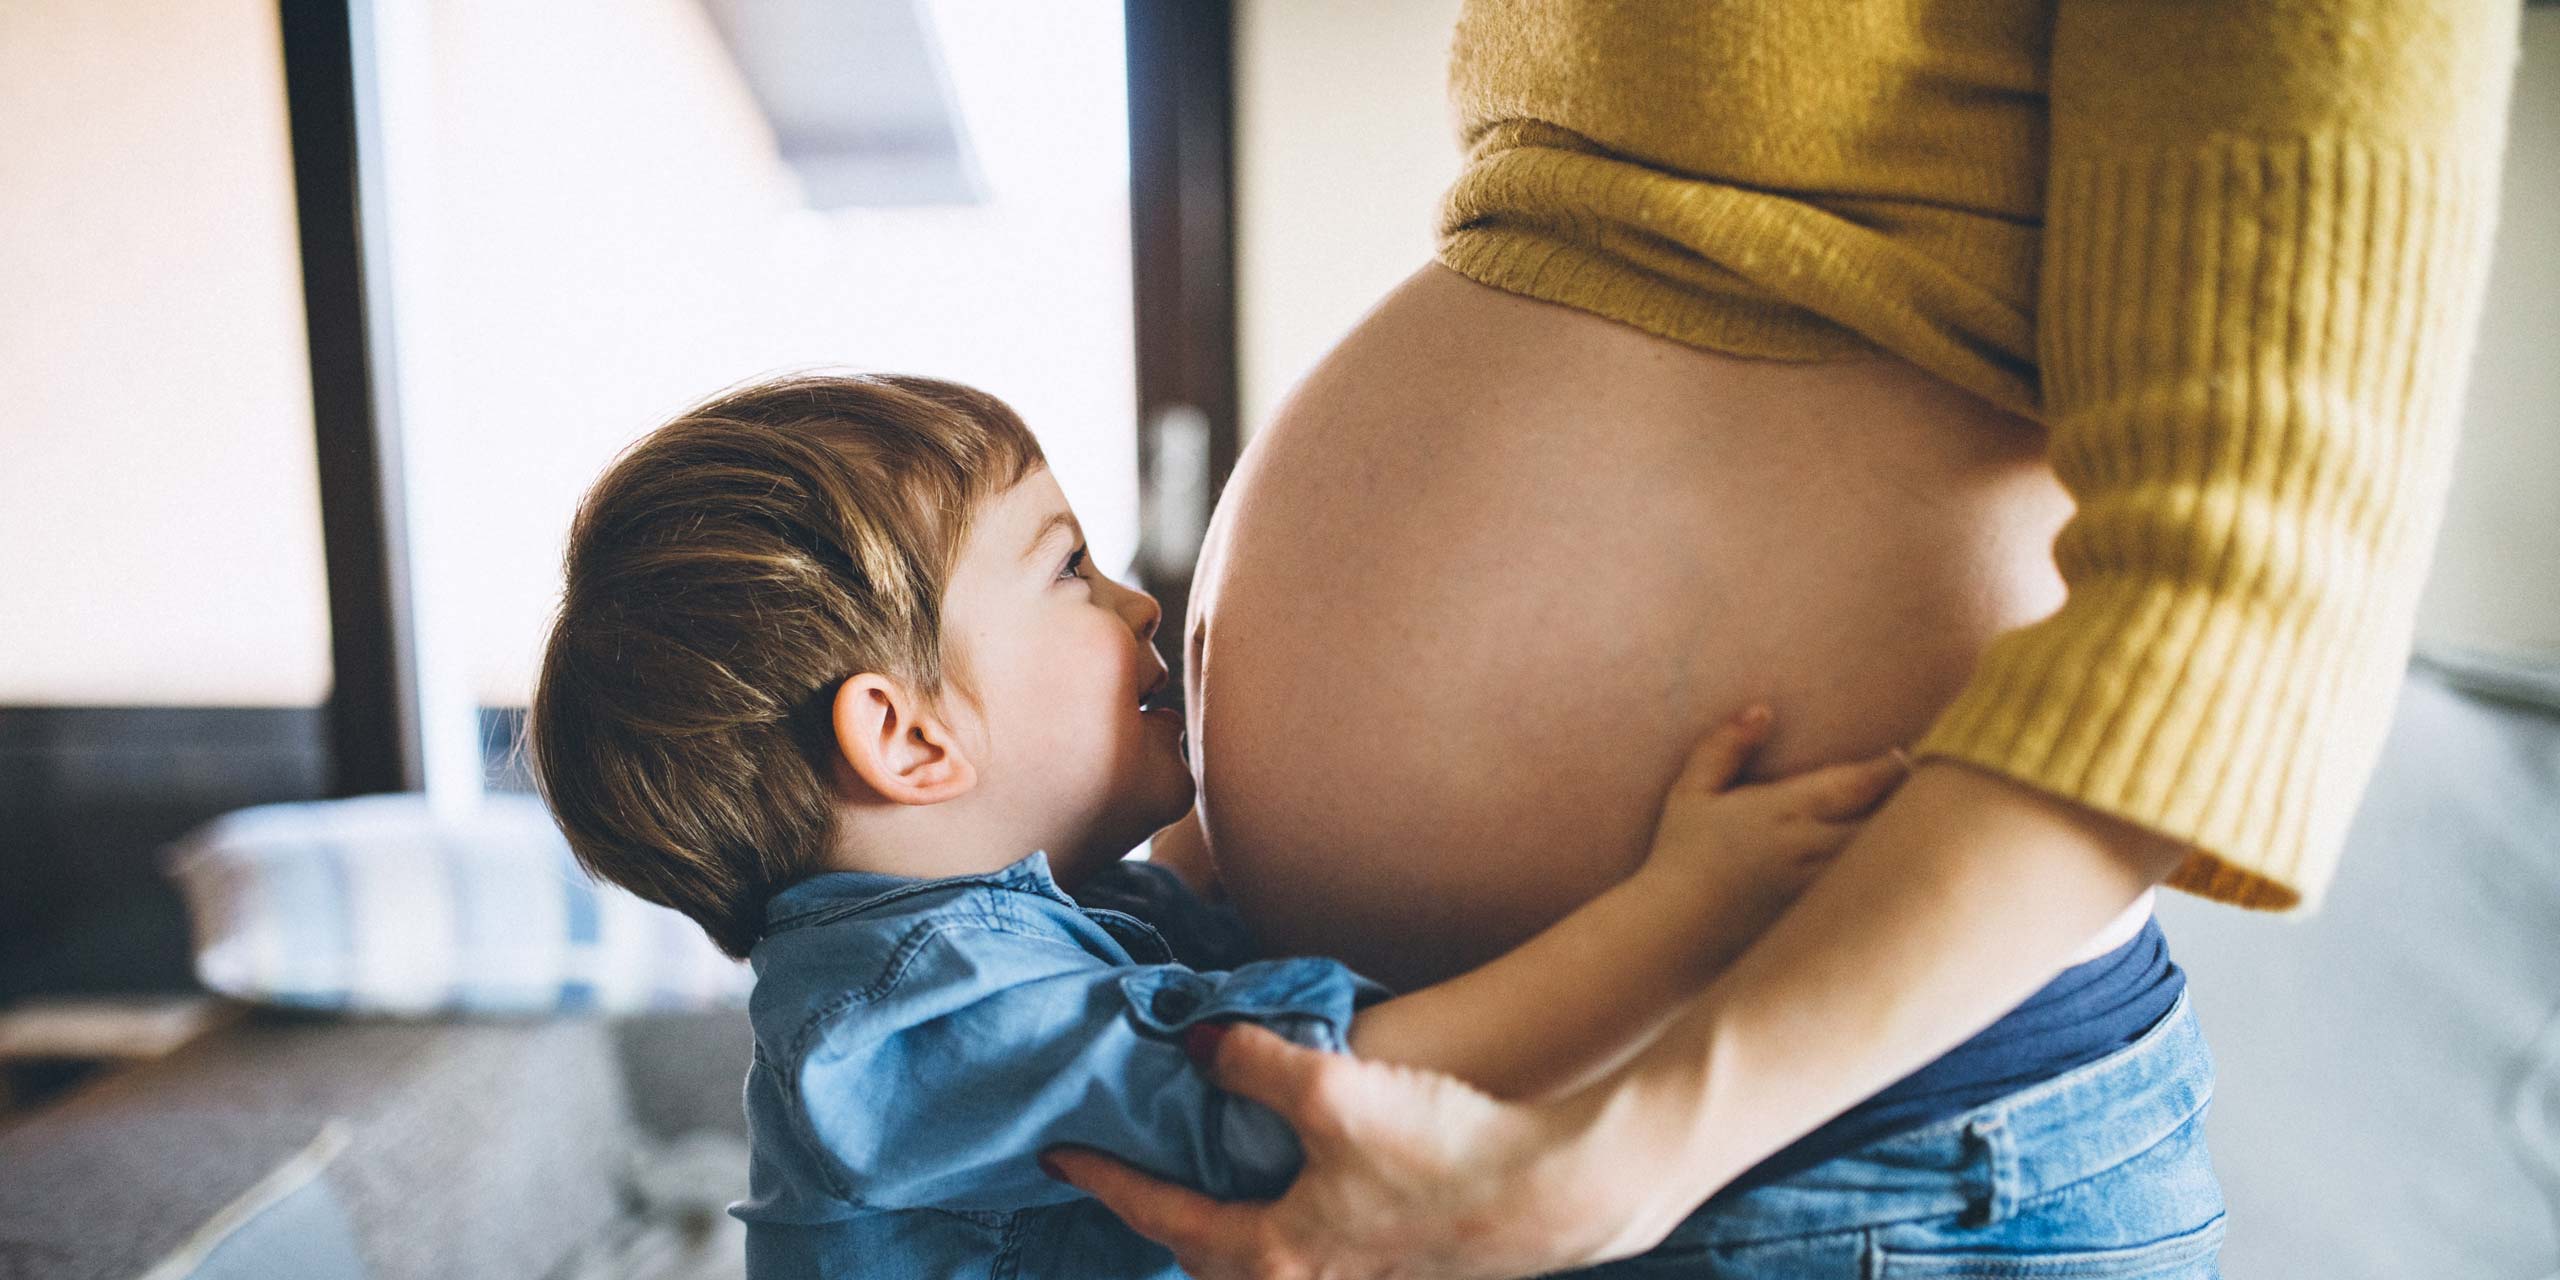 BabyCare screening program for pregnant women